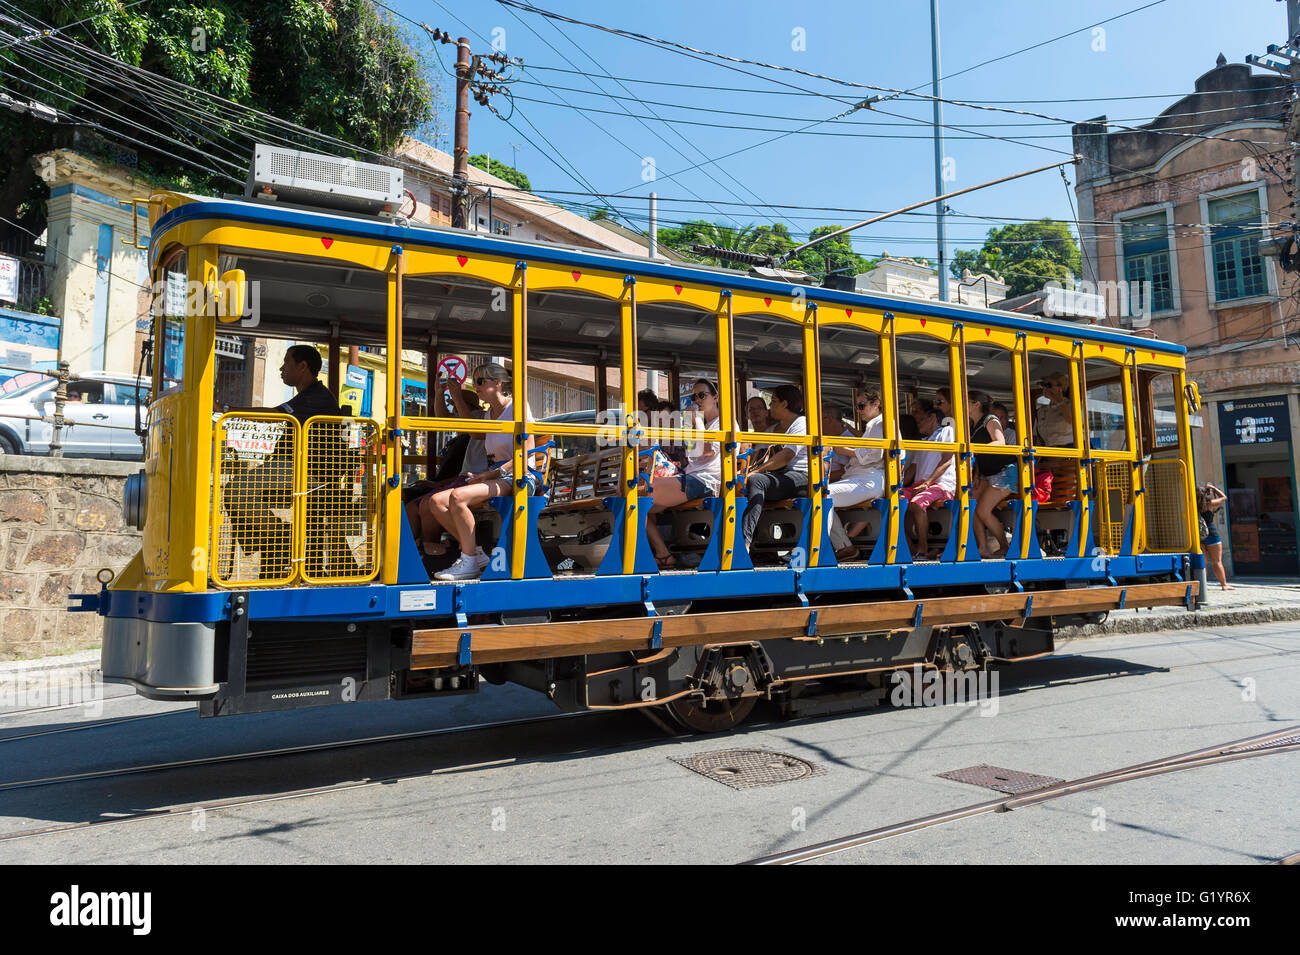 RIO DE JANEIRO - Marzo 28, 2016: Los turistas montar la nueva versión de la icónica bonde tranvía cerca del corazón de Santa Teresa. Foto de stock